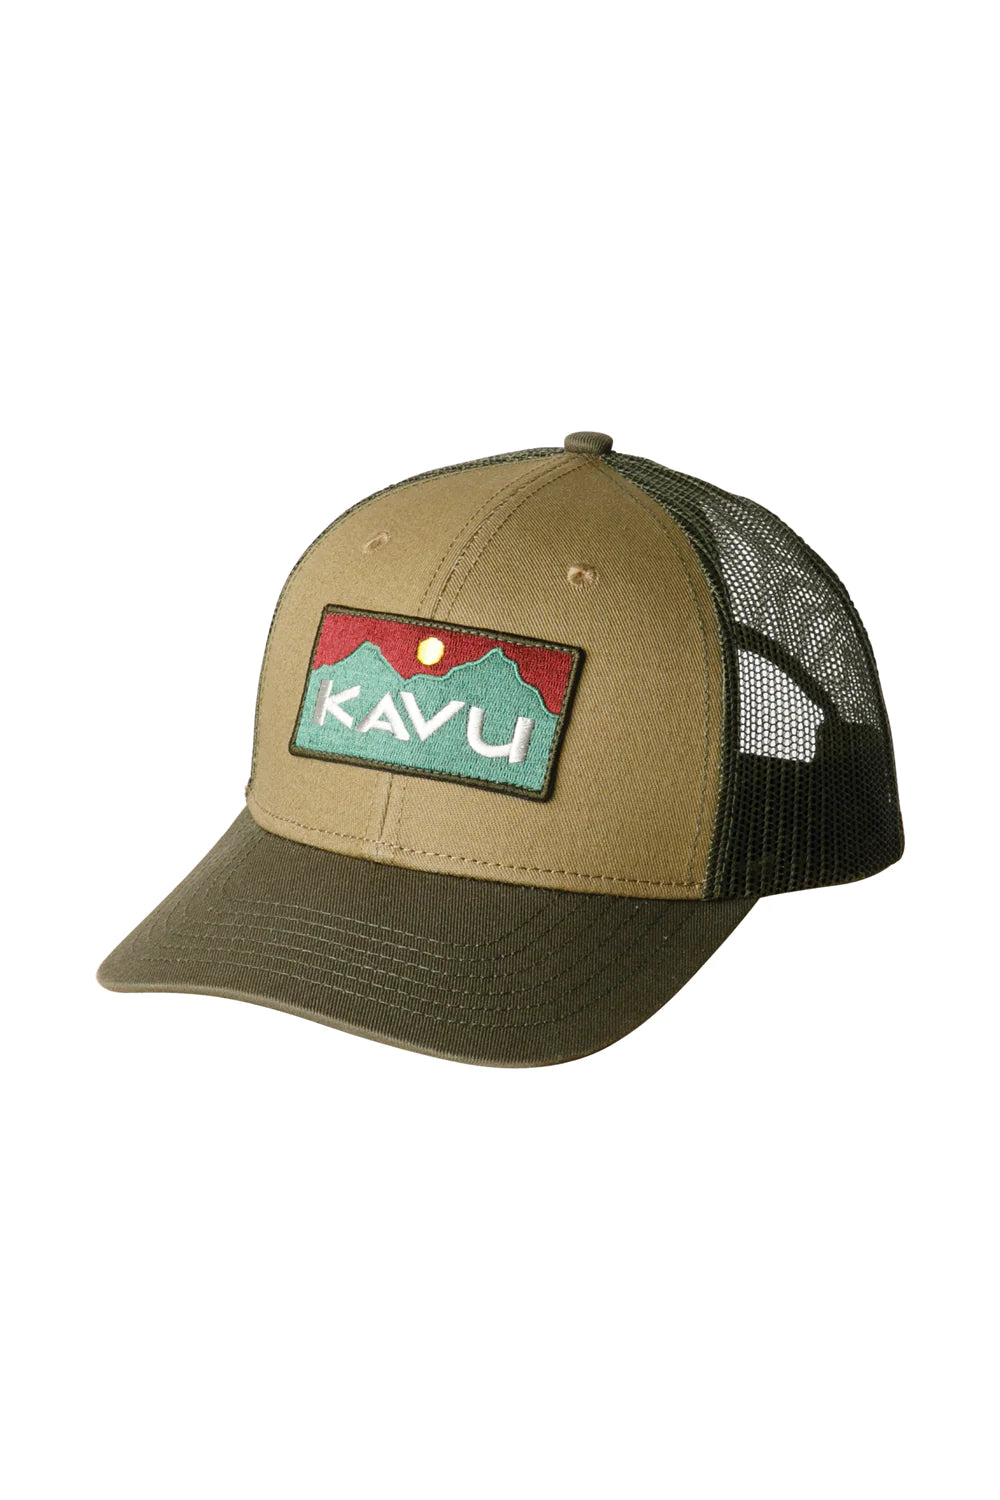 Kavu - Trucker Above Standard Green Moss